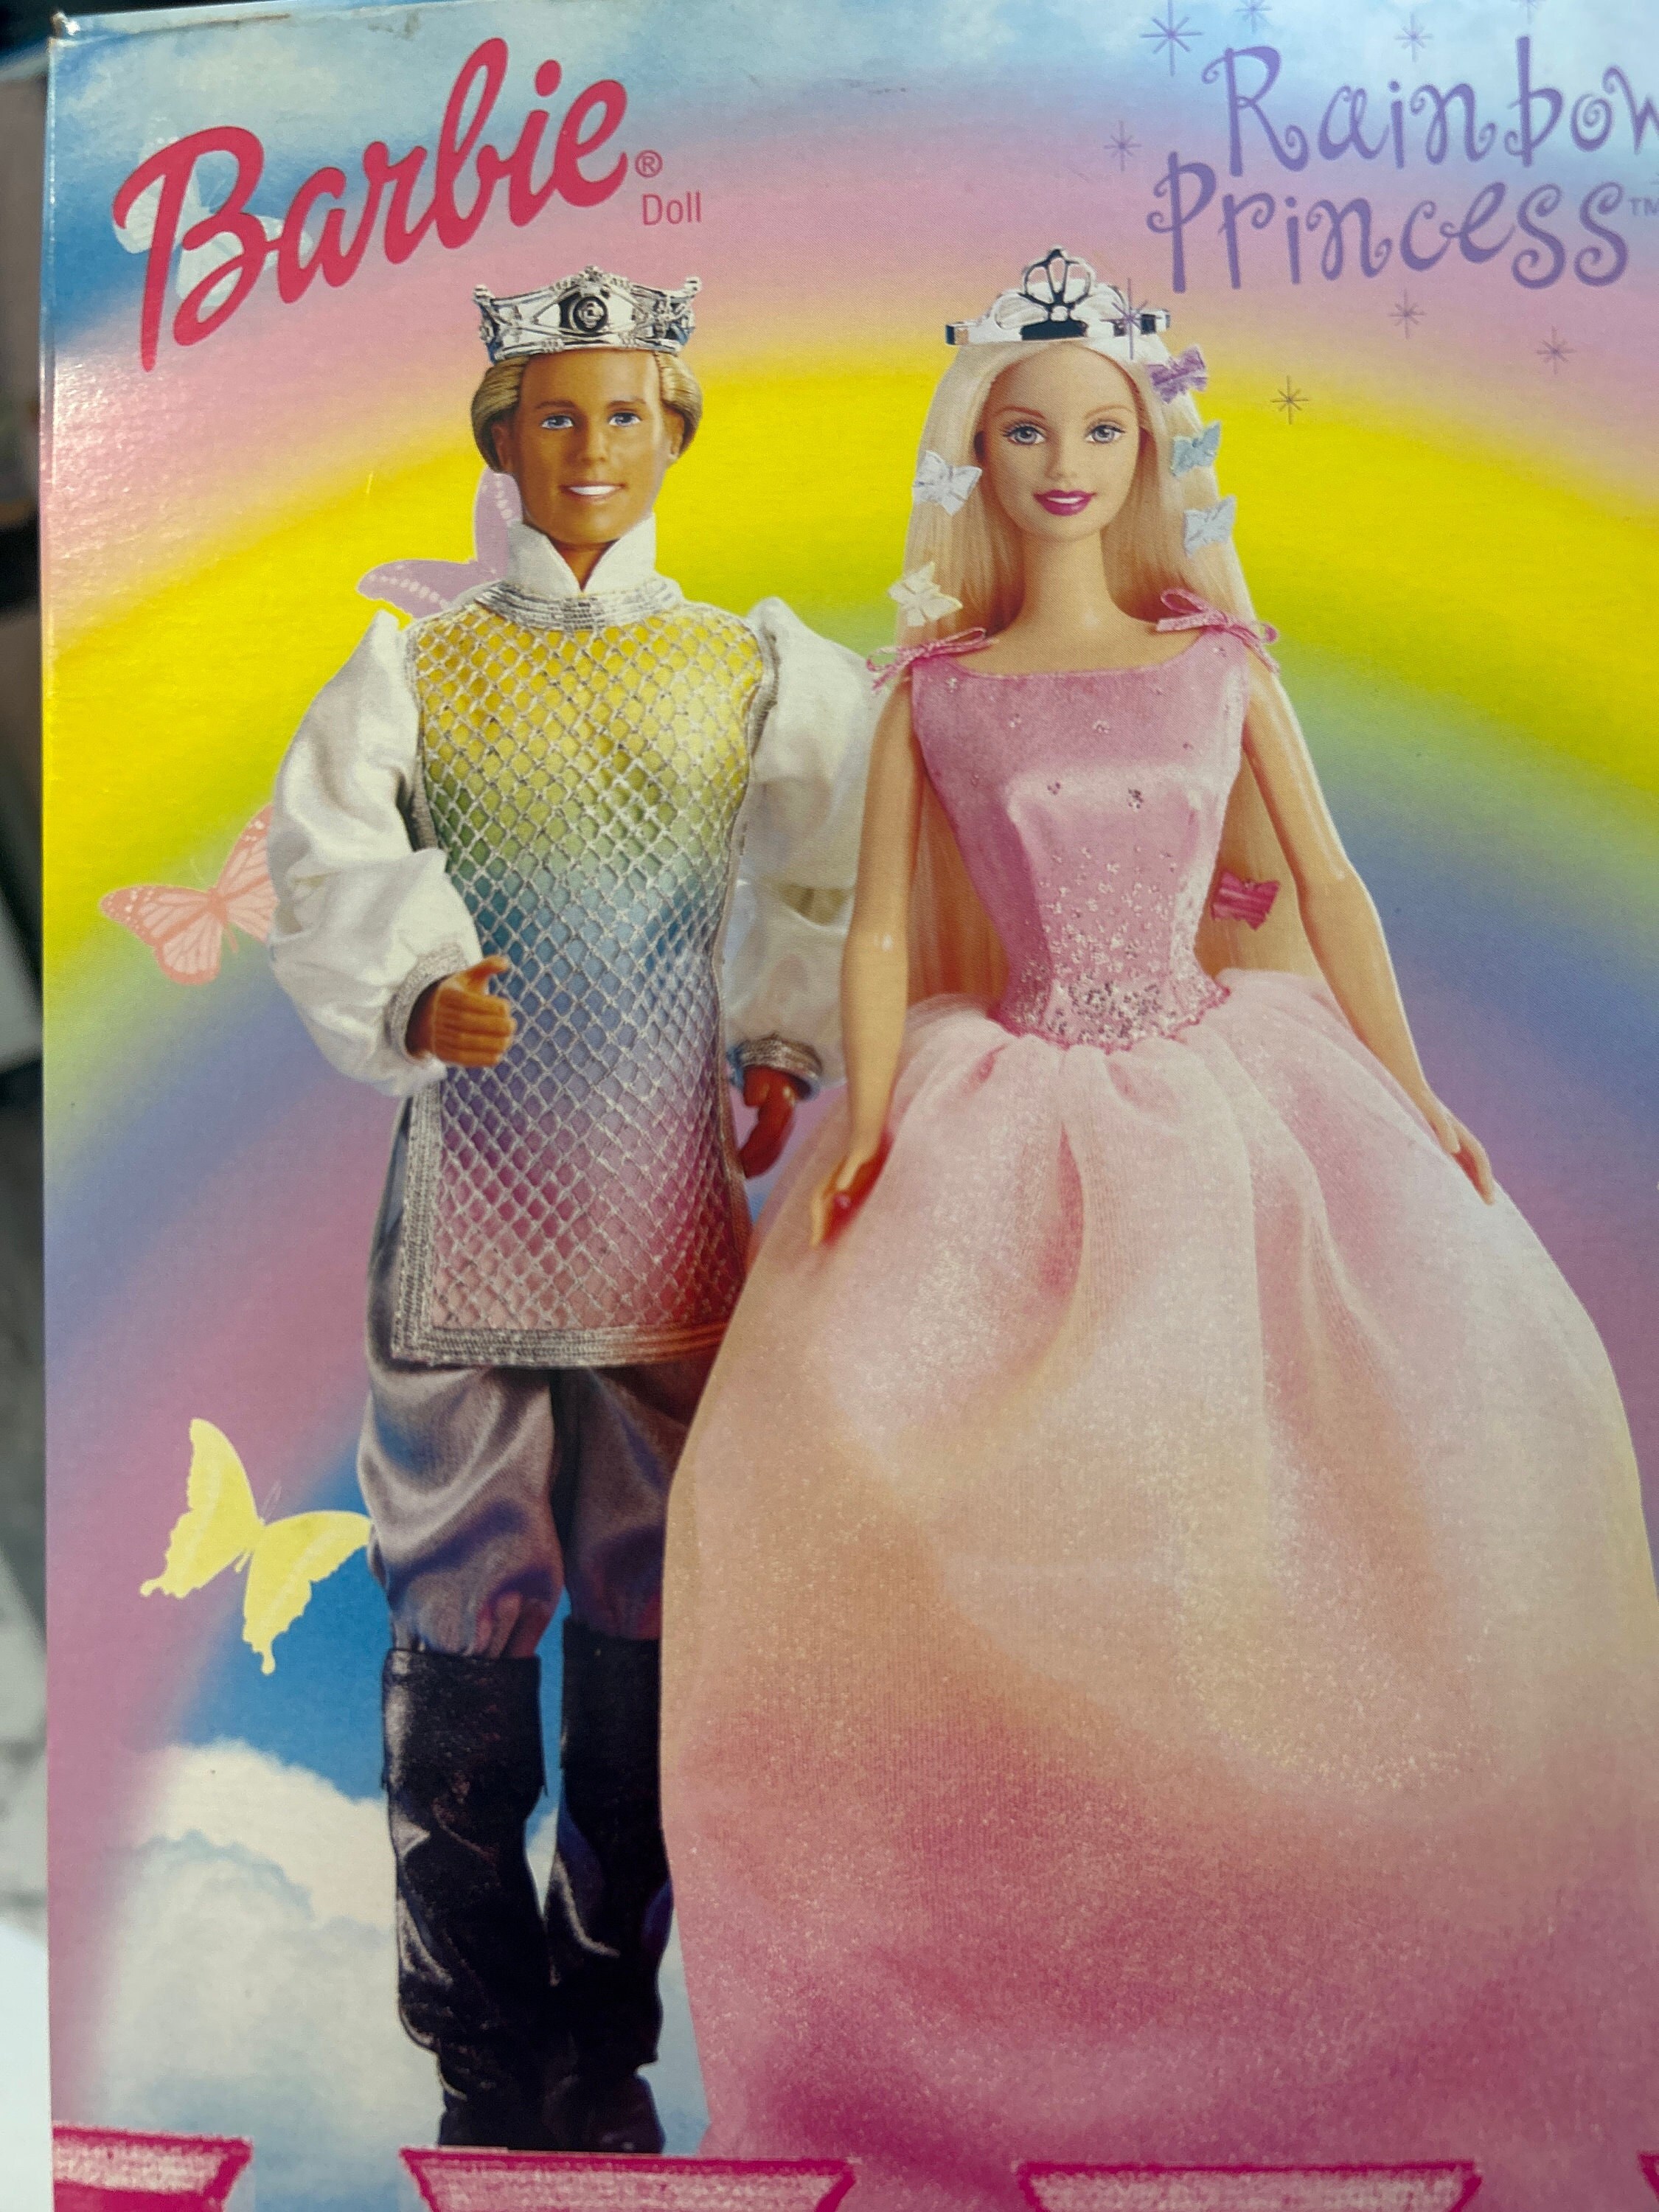 1999 Rainbow Princess AA Barbie – Sell4Value